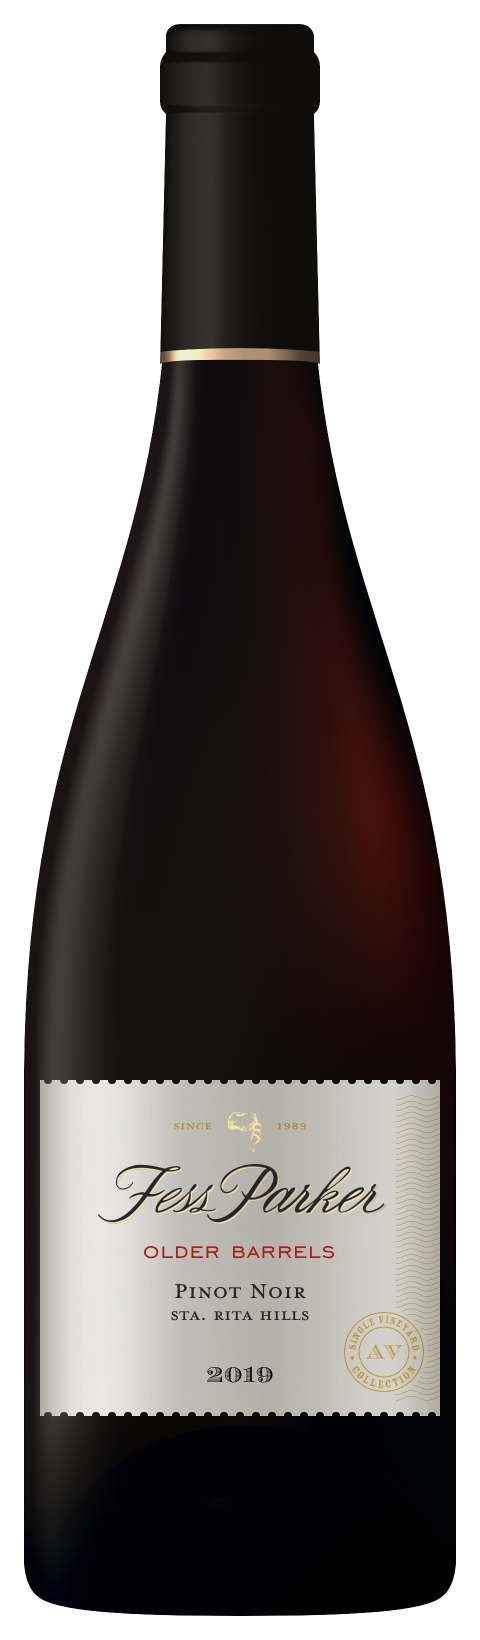 Bottle shot of Older Barrels Pinot Noir